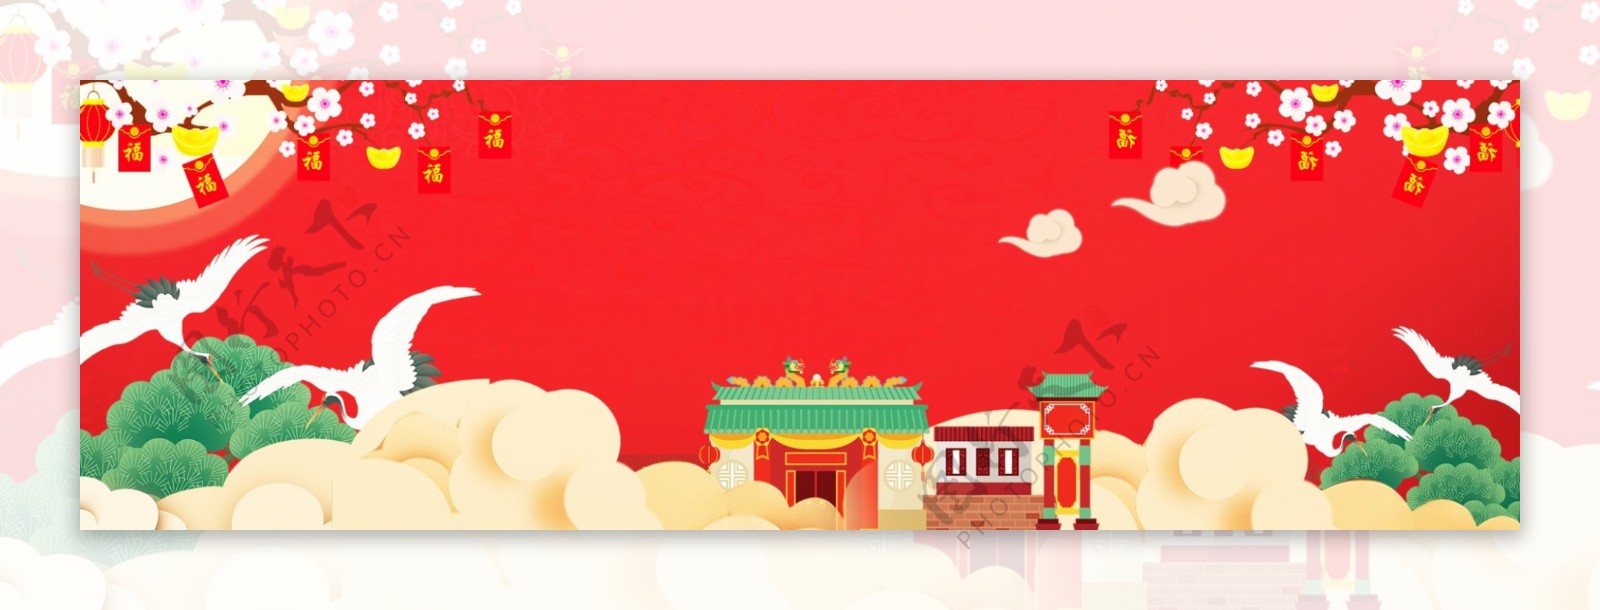 怀旧年货节中国风新年节日banner背景